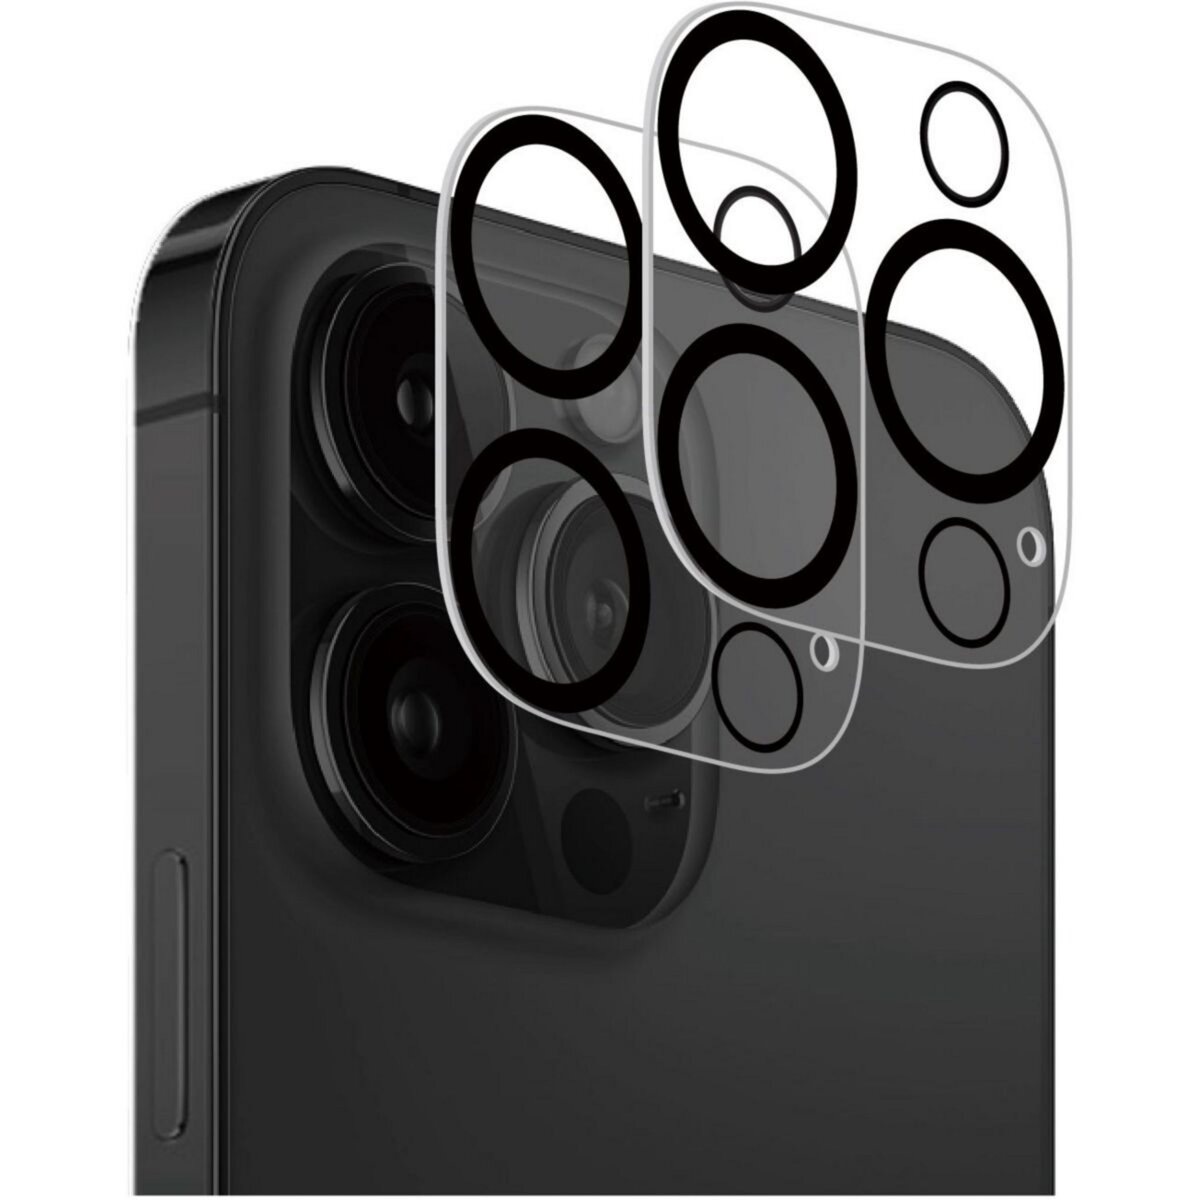 Protège objectif QDOS iPhone 12 Pro Max Objectif de camera Qdos en